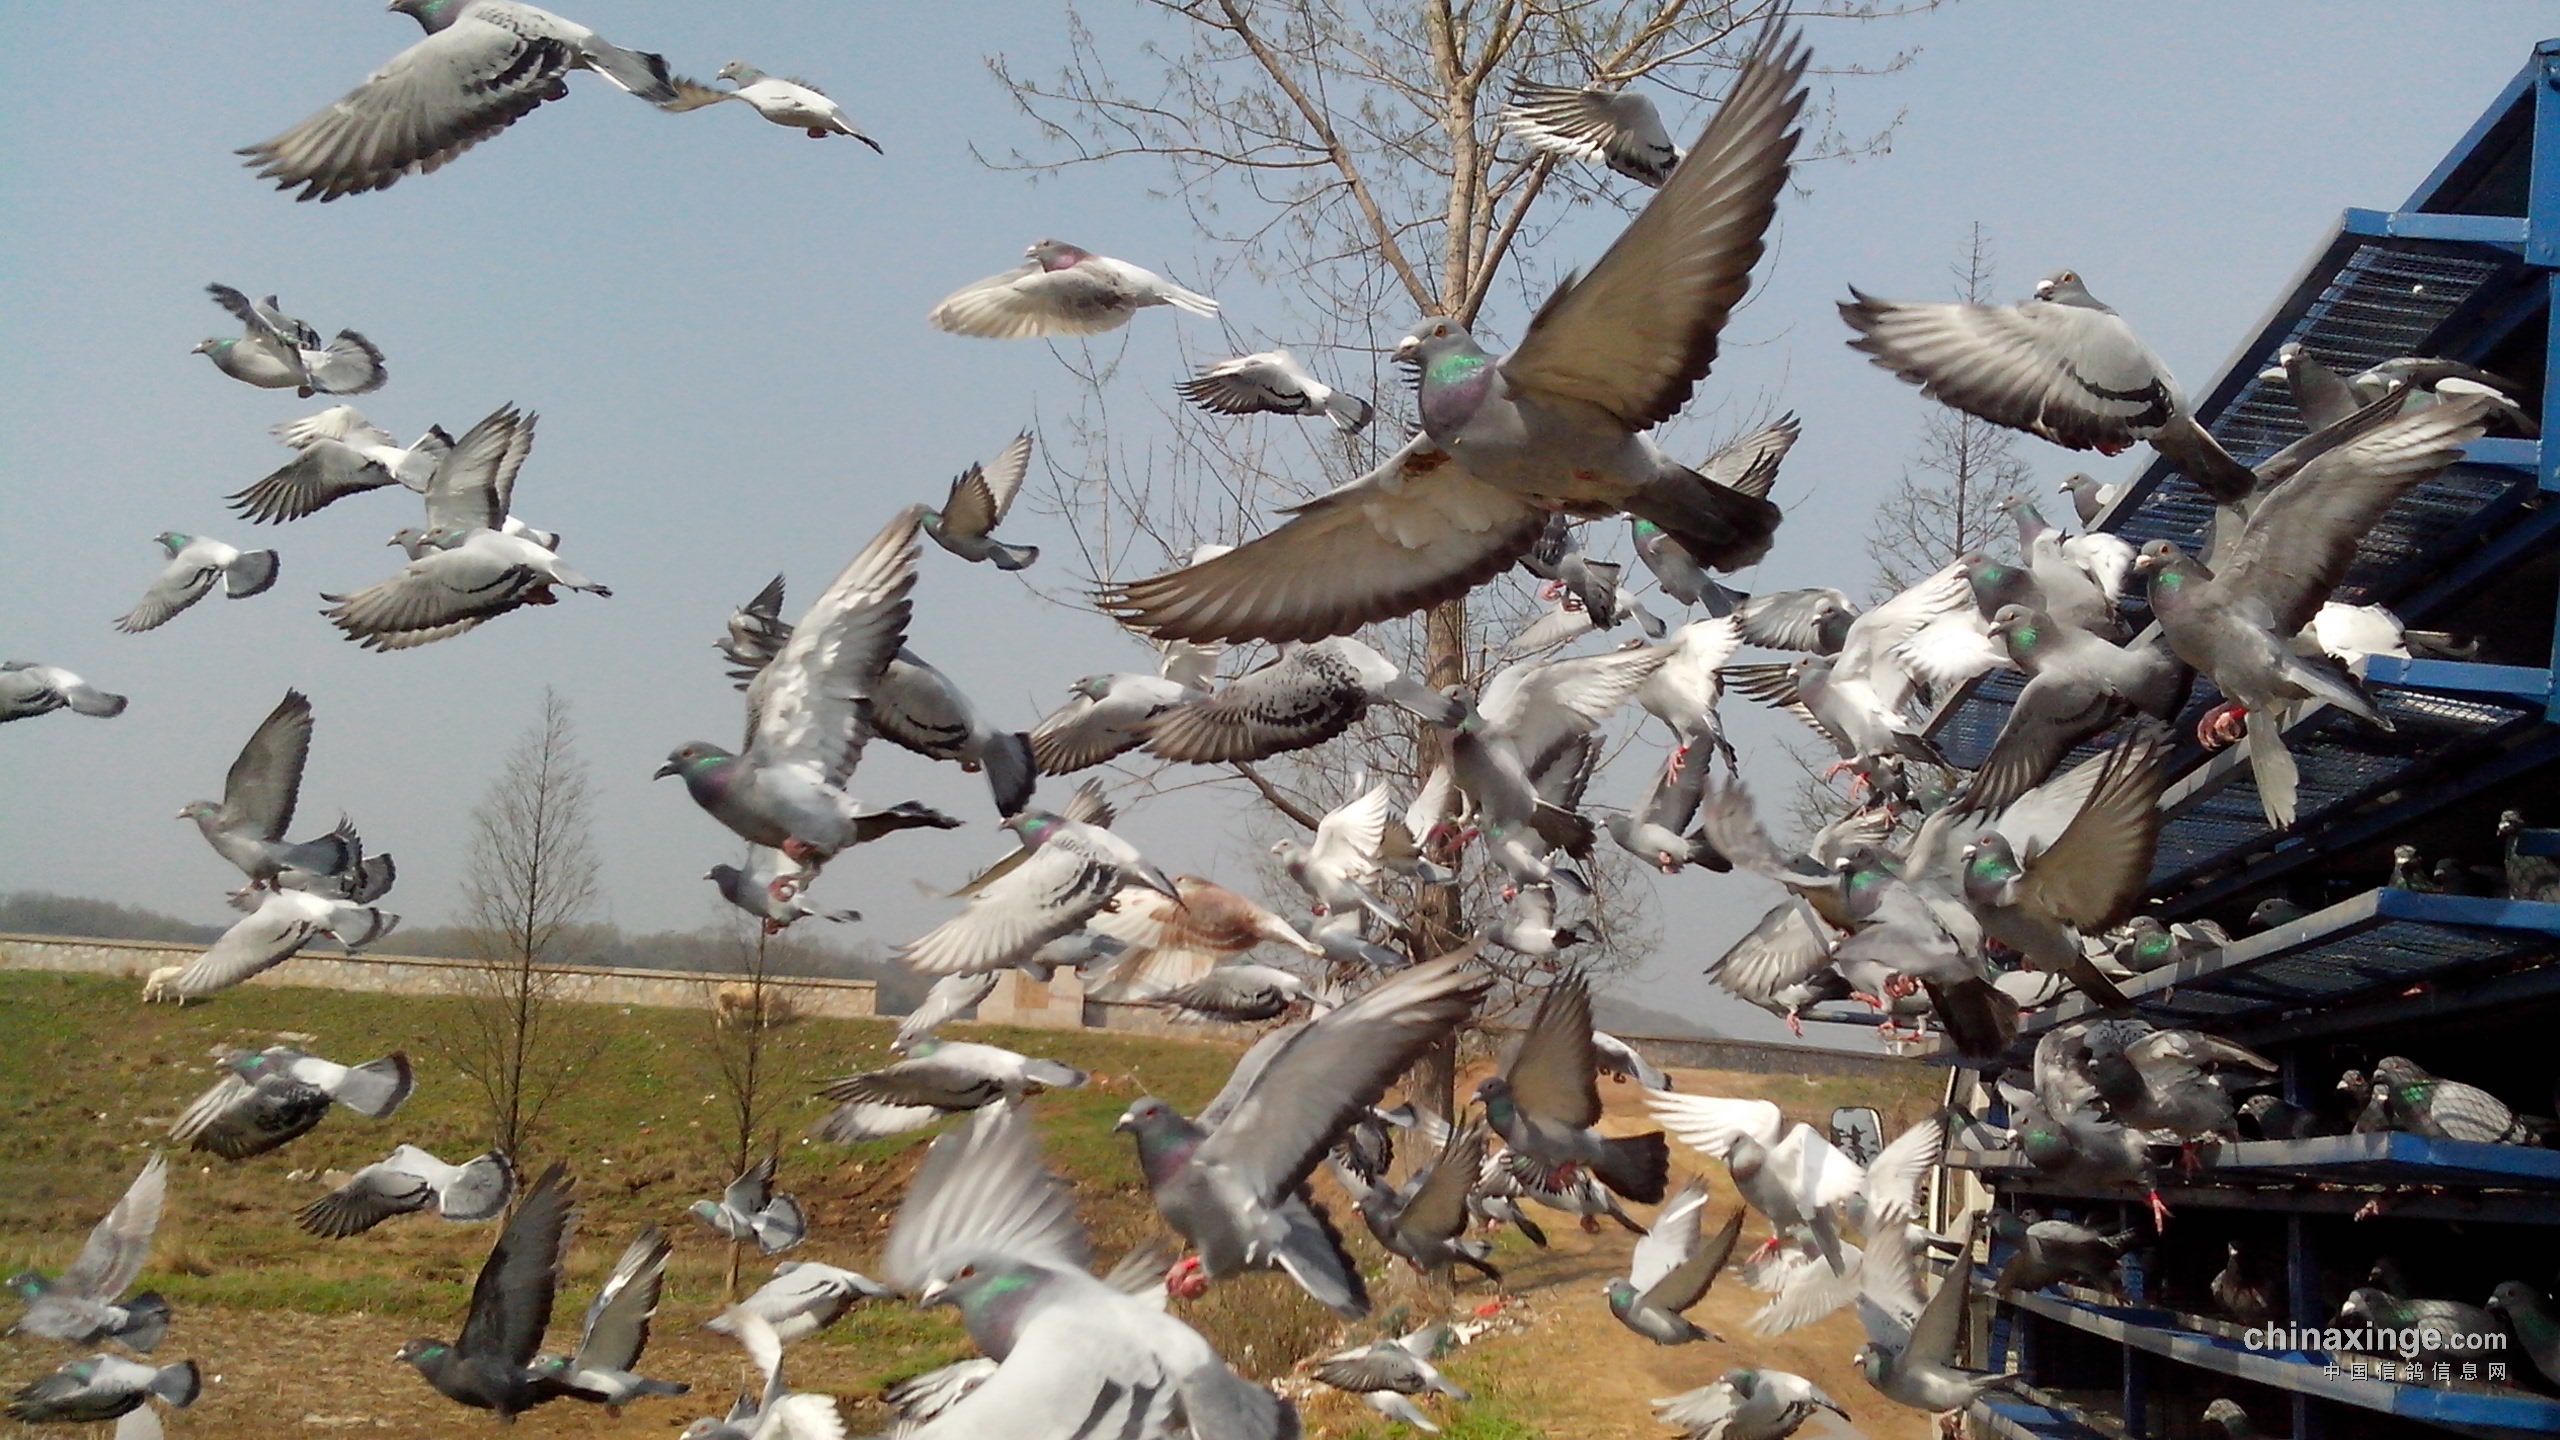 印度蓝鸽画像 库存照片. 图片 包括有 敌意, 题头, 提供, 鸟笼, 公园, 庭院, 栖息, 本质, 羽毛 - 170792206